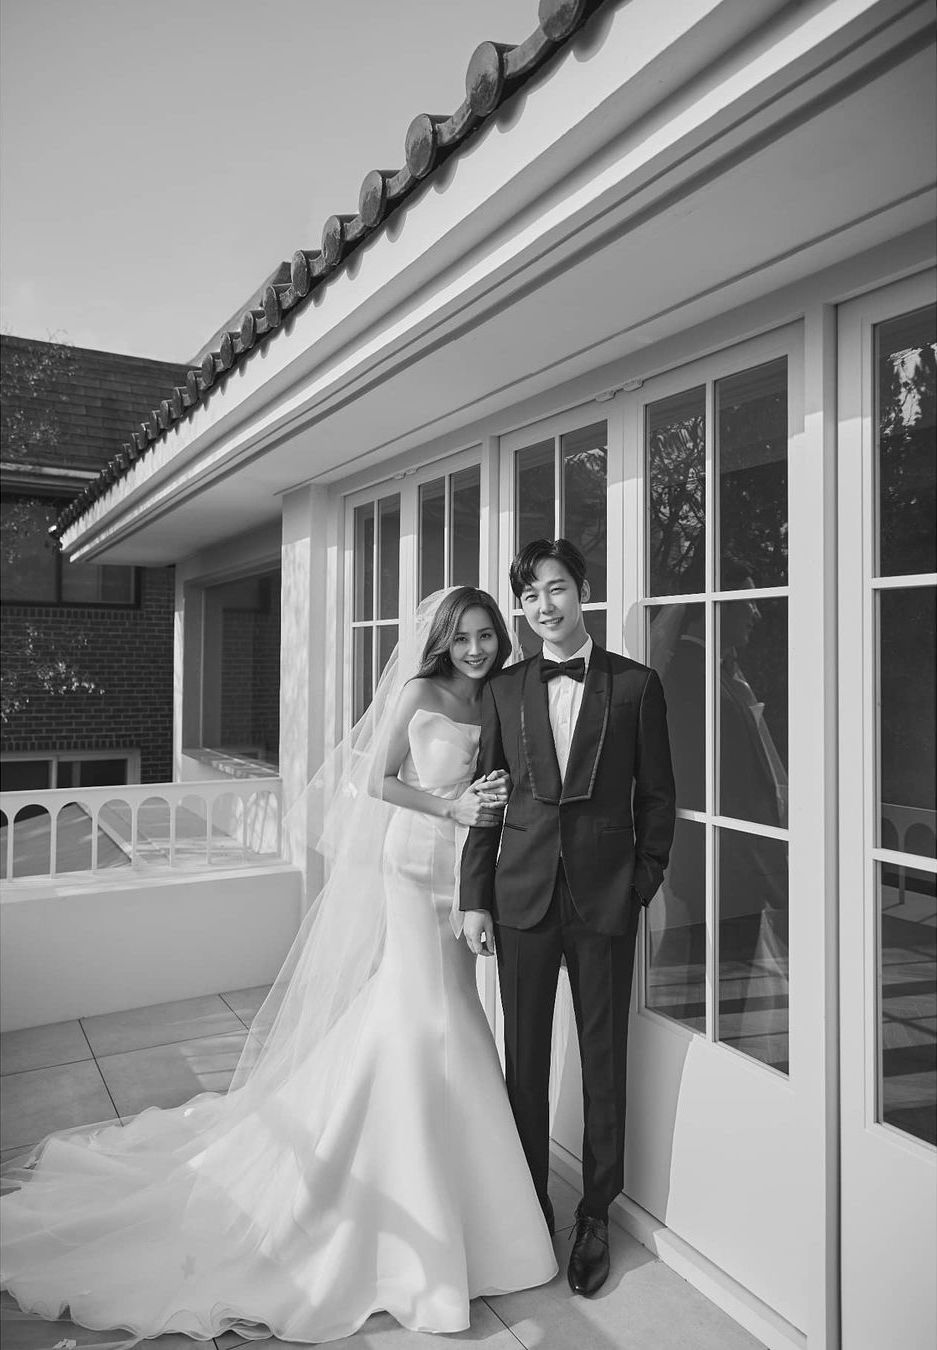 Lựa chọn bộ ảnh cưới của Oh Yoon Hee để tận hưởng một trải nghiệm đẹp và xúng xính. Những thiết kế áo cưới tuyệt đẹp cùng với phong cách trang điểm và tóc mới lạ của cô dâu sẽ khiến bạn đắm chìm trong thế giới lãng mạn của đám cưới.